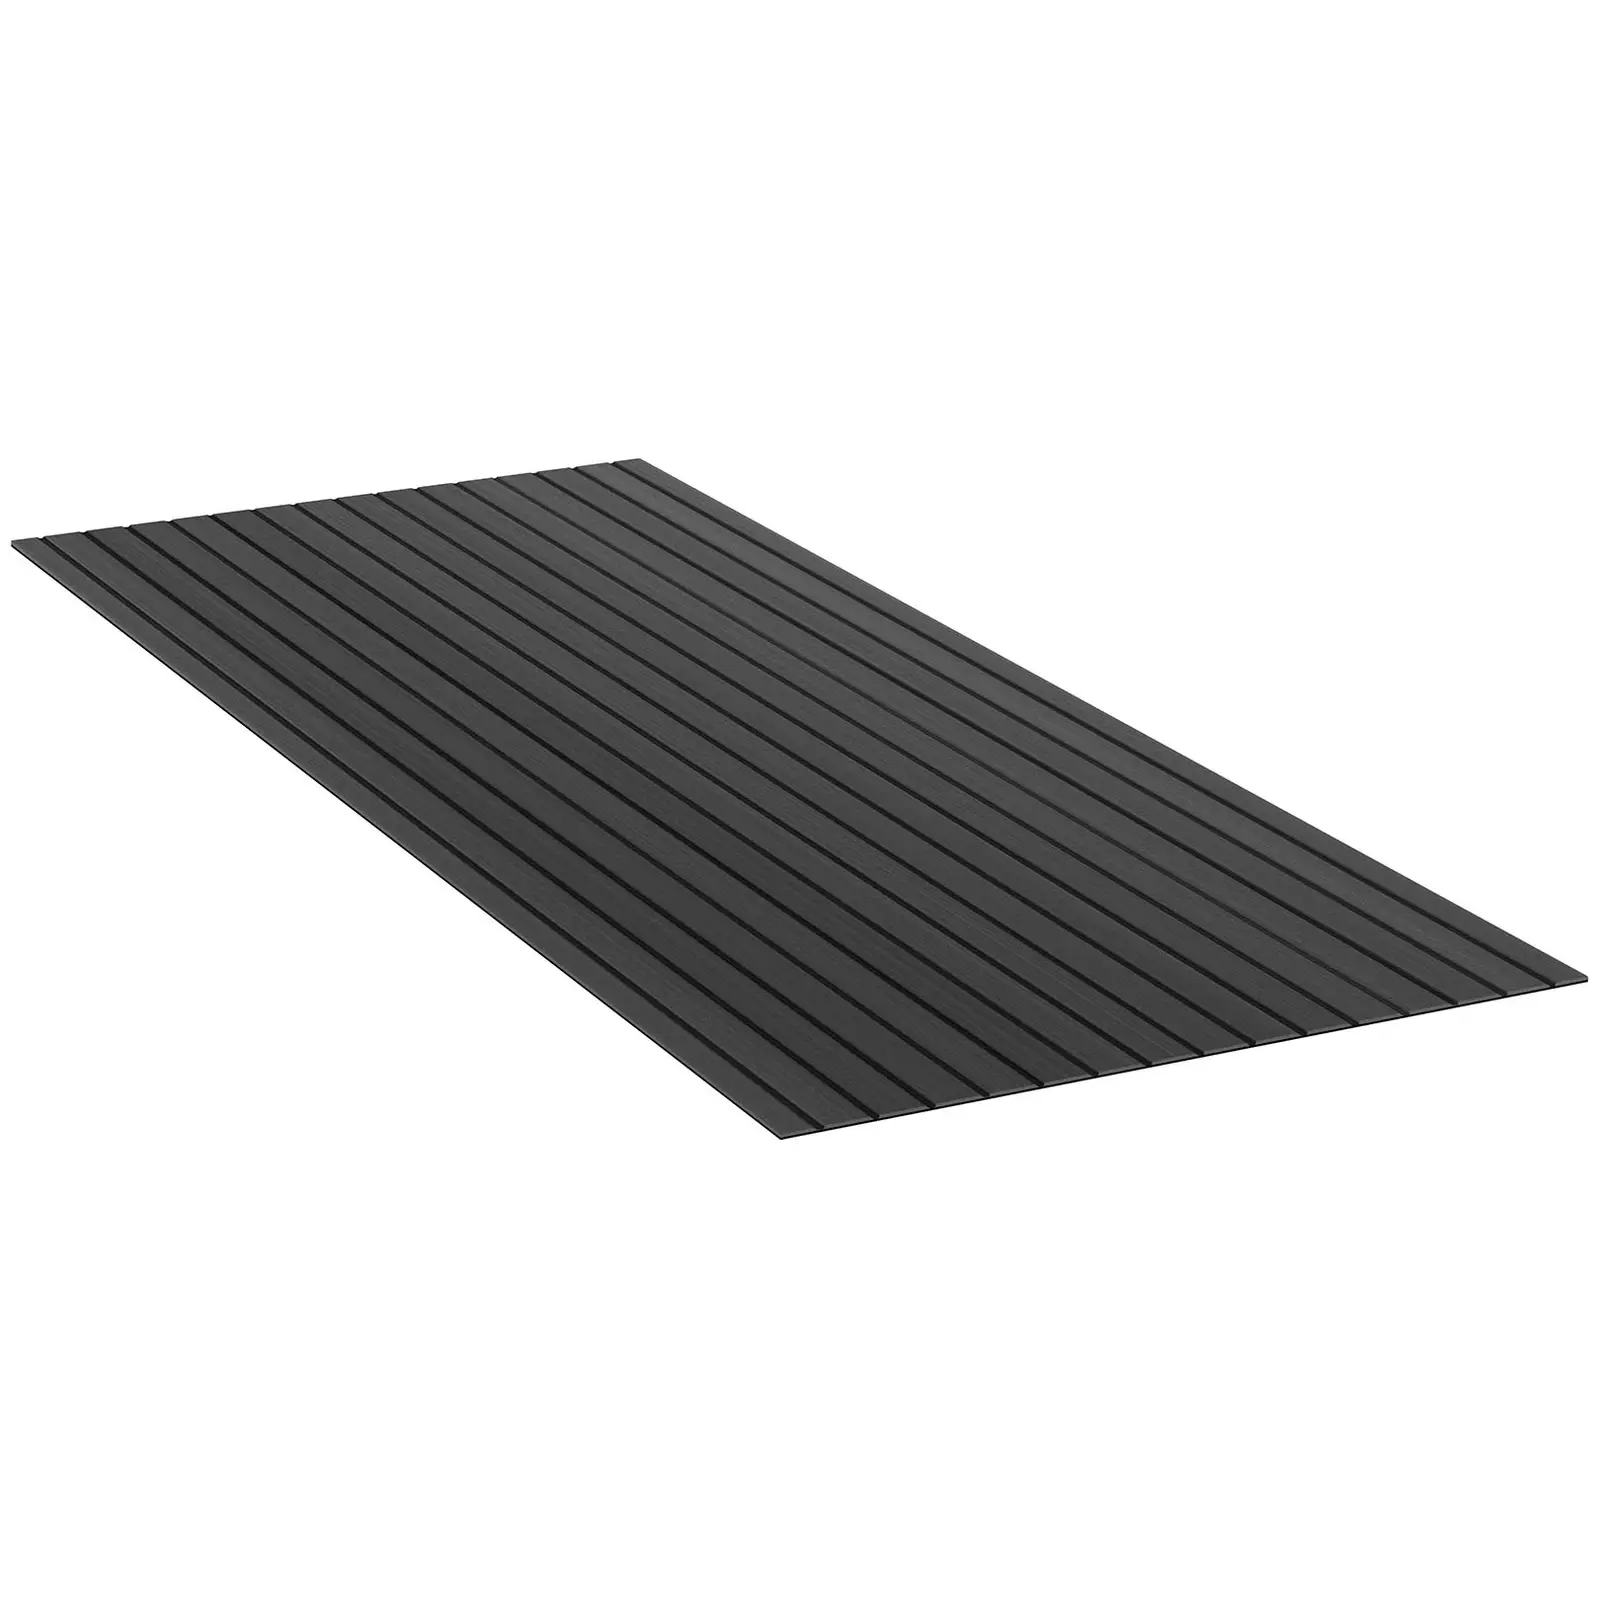 Podele pentru bărci - 240 x 90 cm - antracit/negru